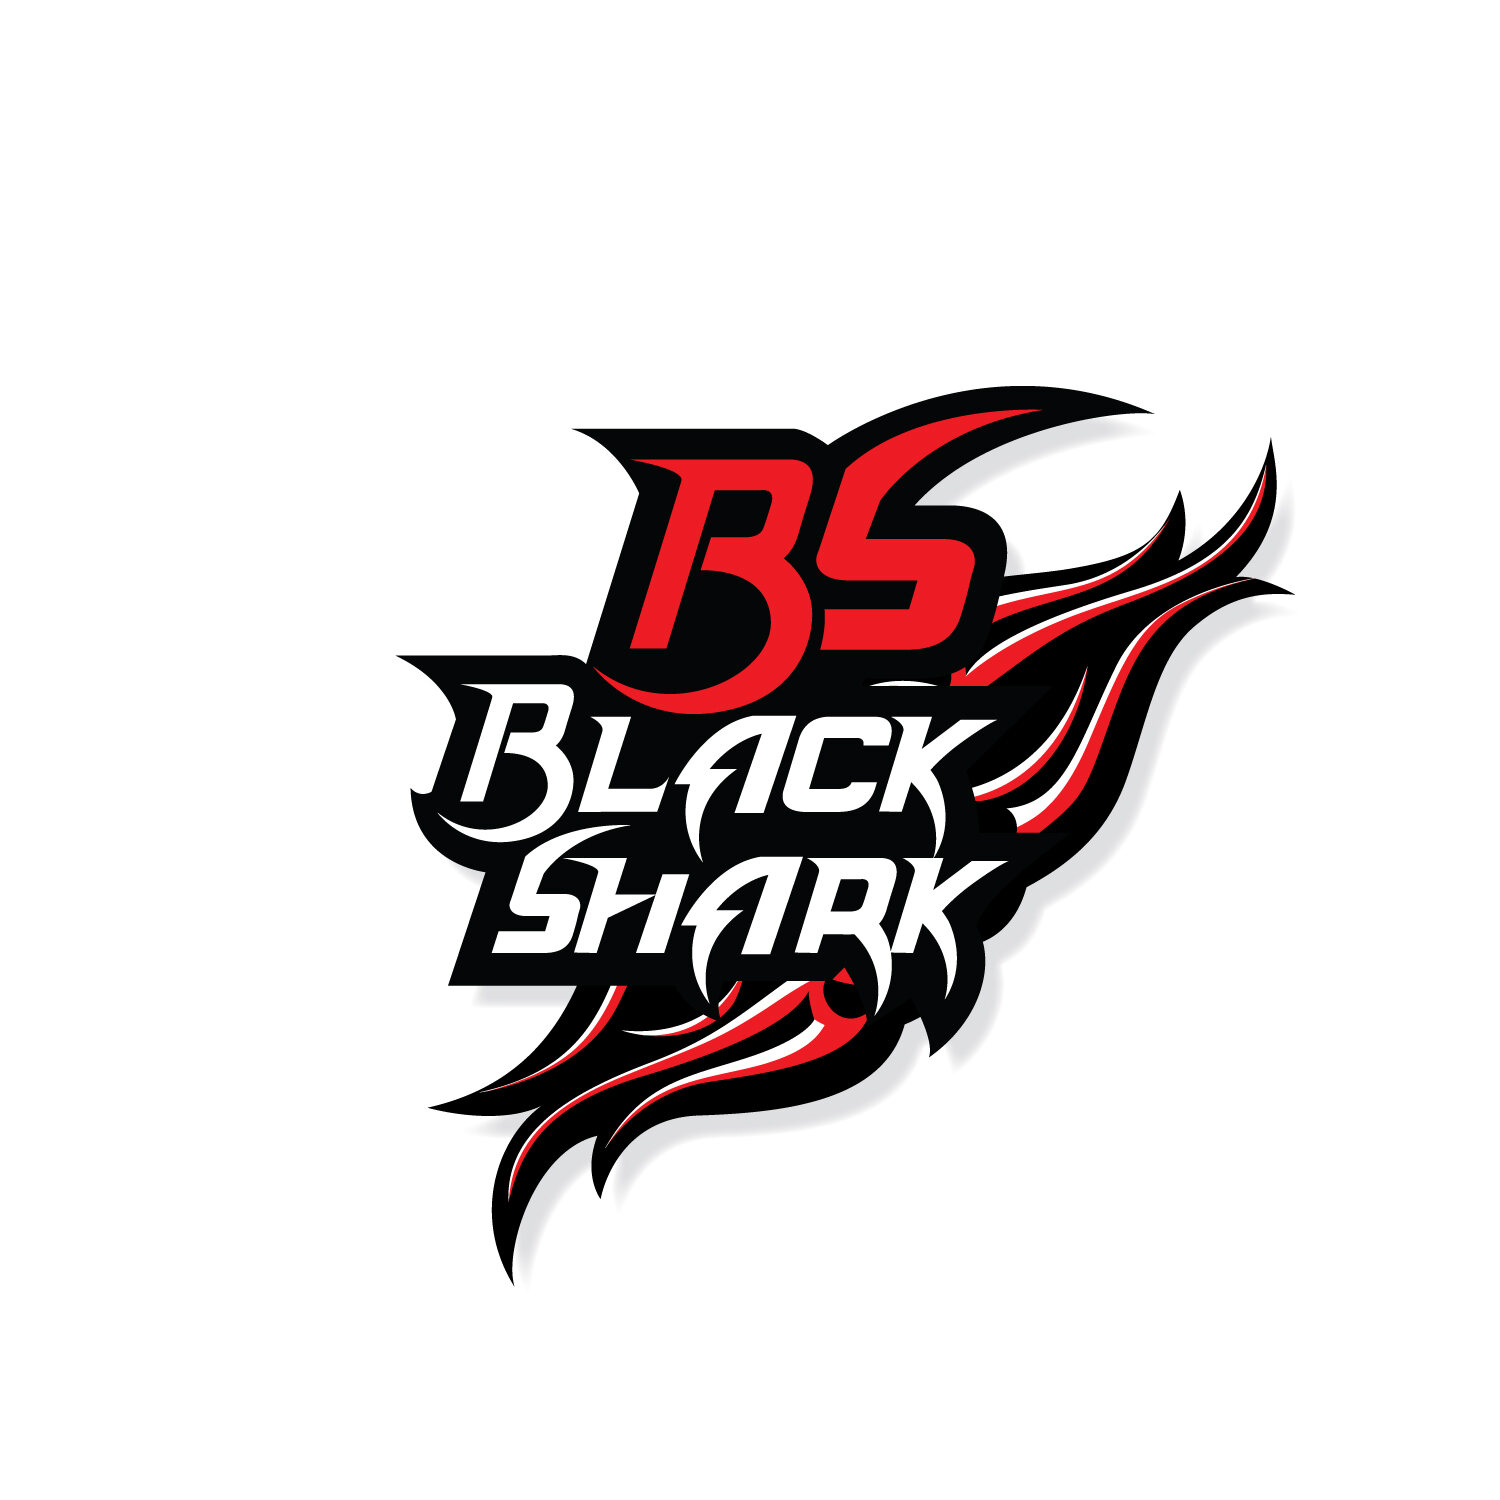 PHỤ KIỆN ĐIỆN THOẠI BLACK SHARK 4 thumbnail